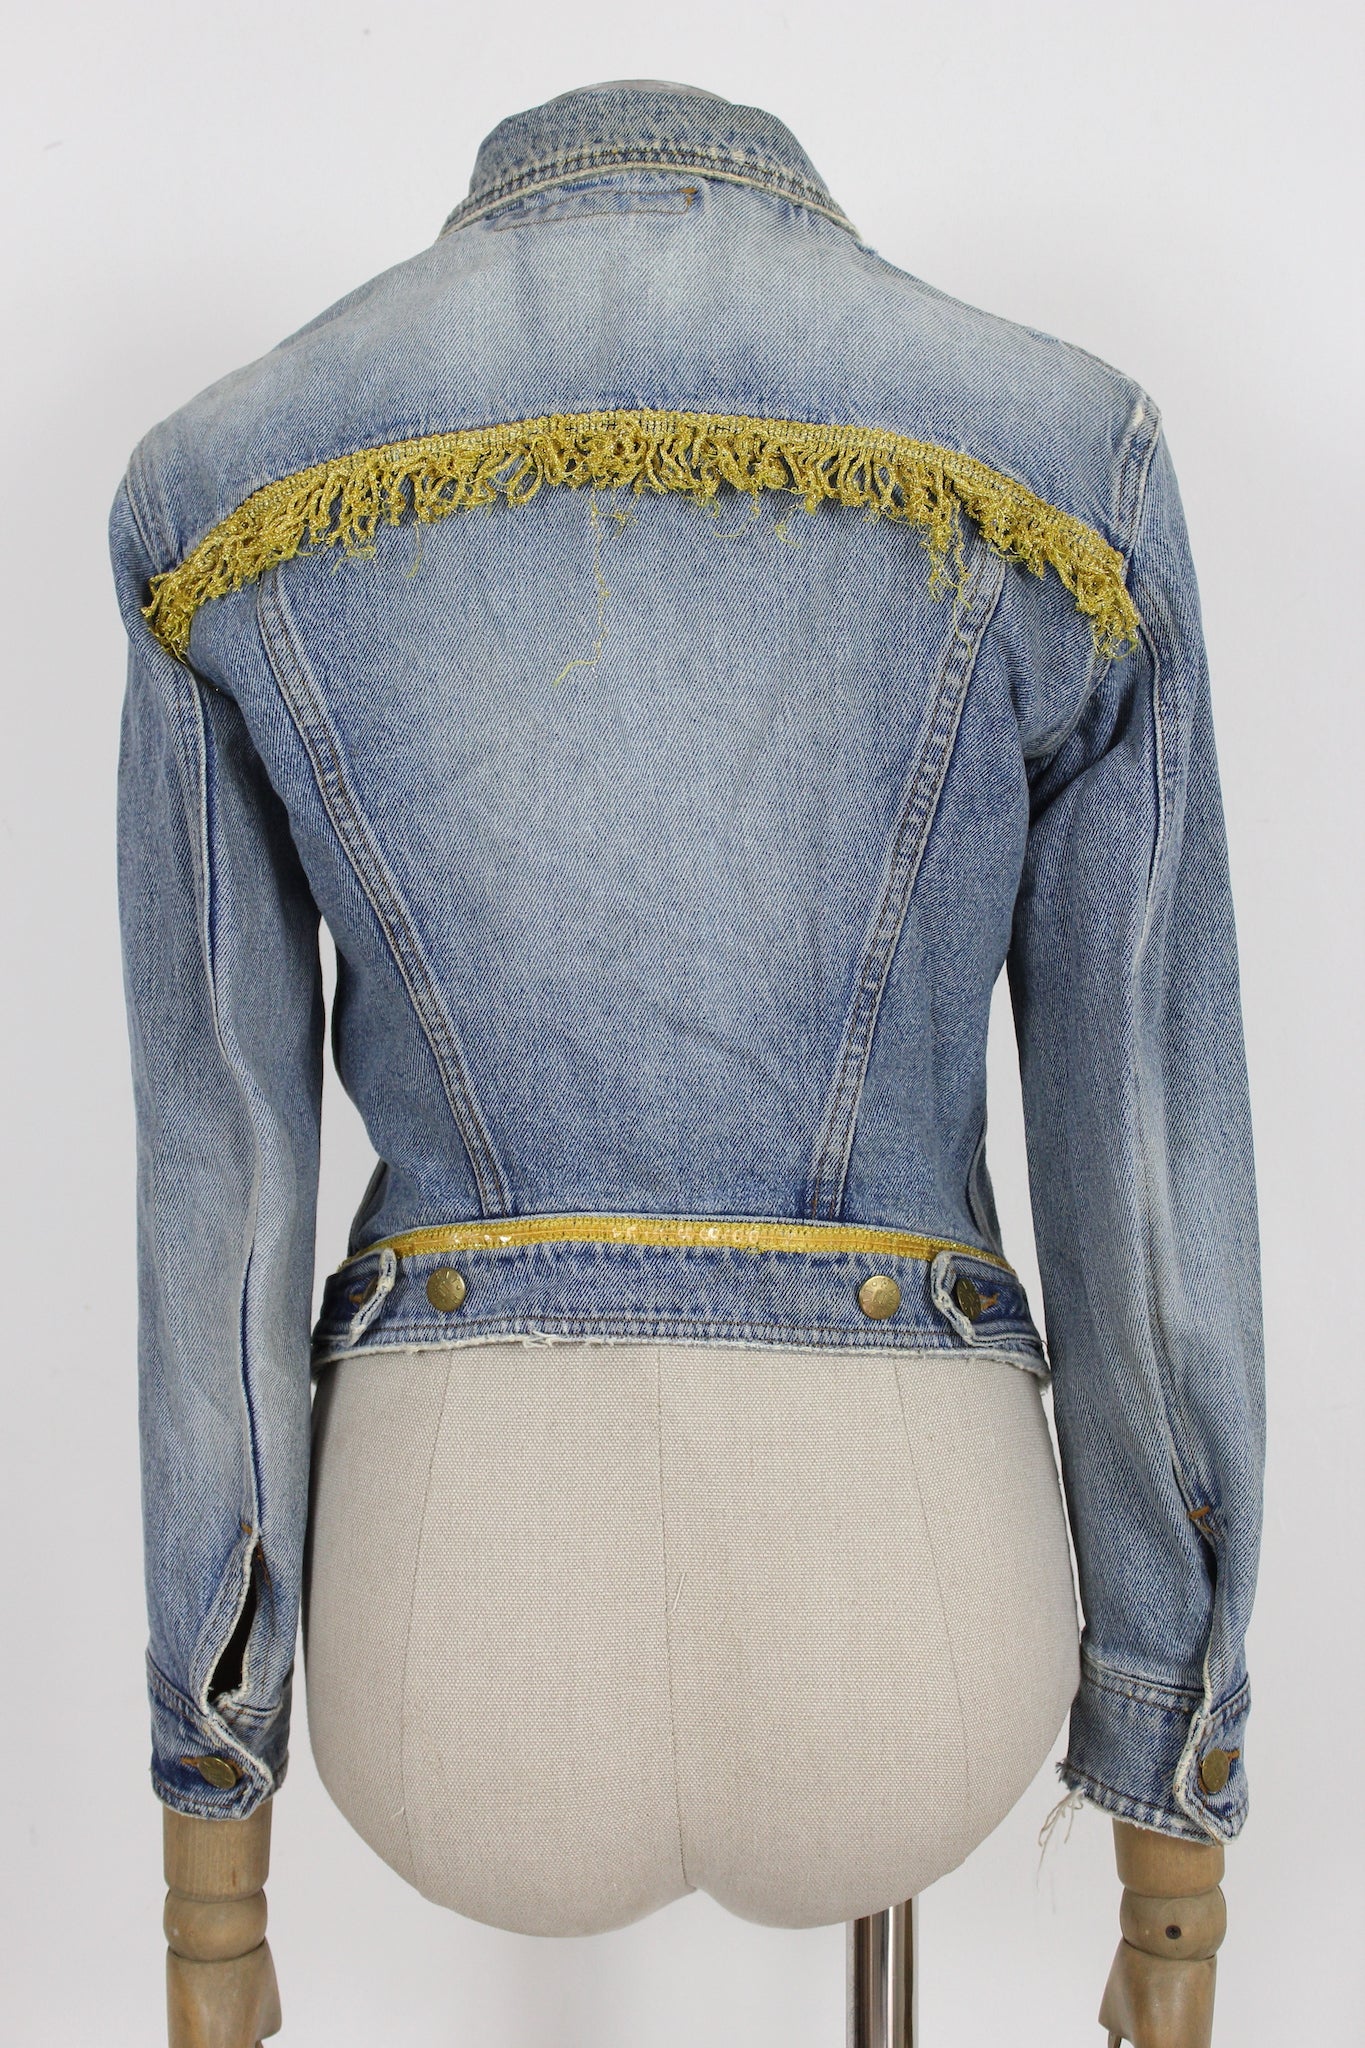 Katharine Hamnett Jeans Golden Fringes Jacket Vintage 90s